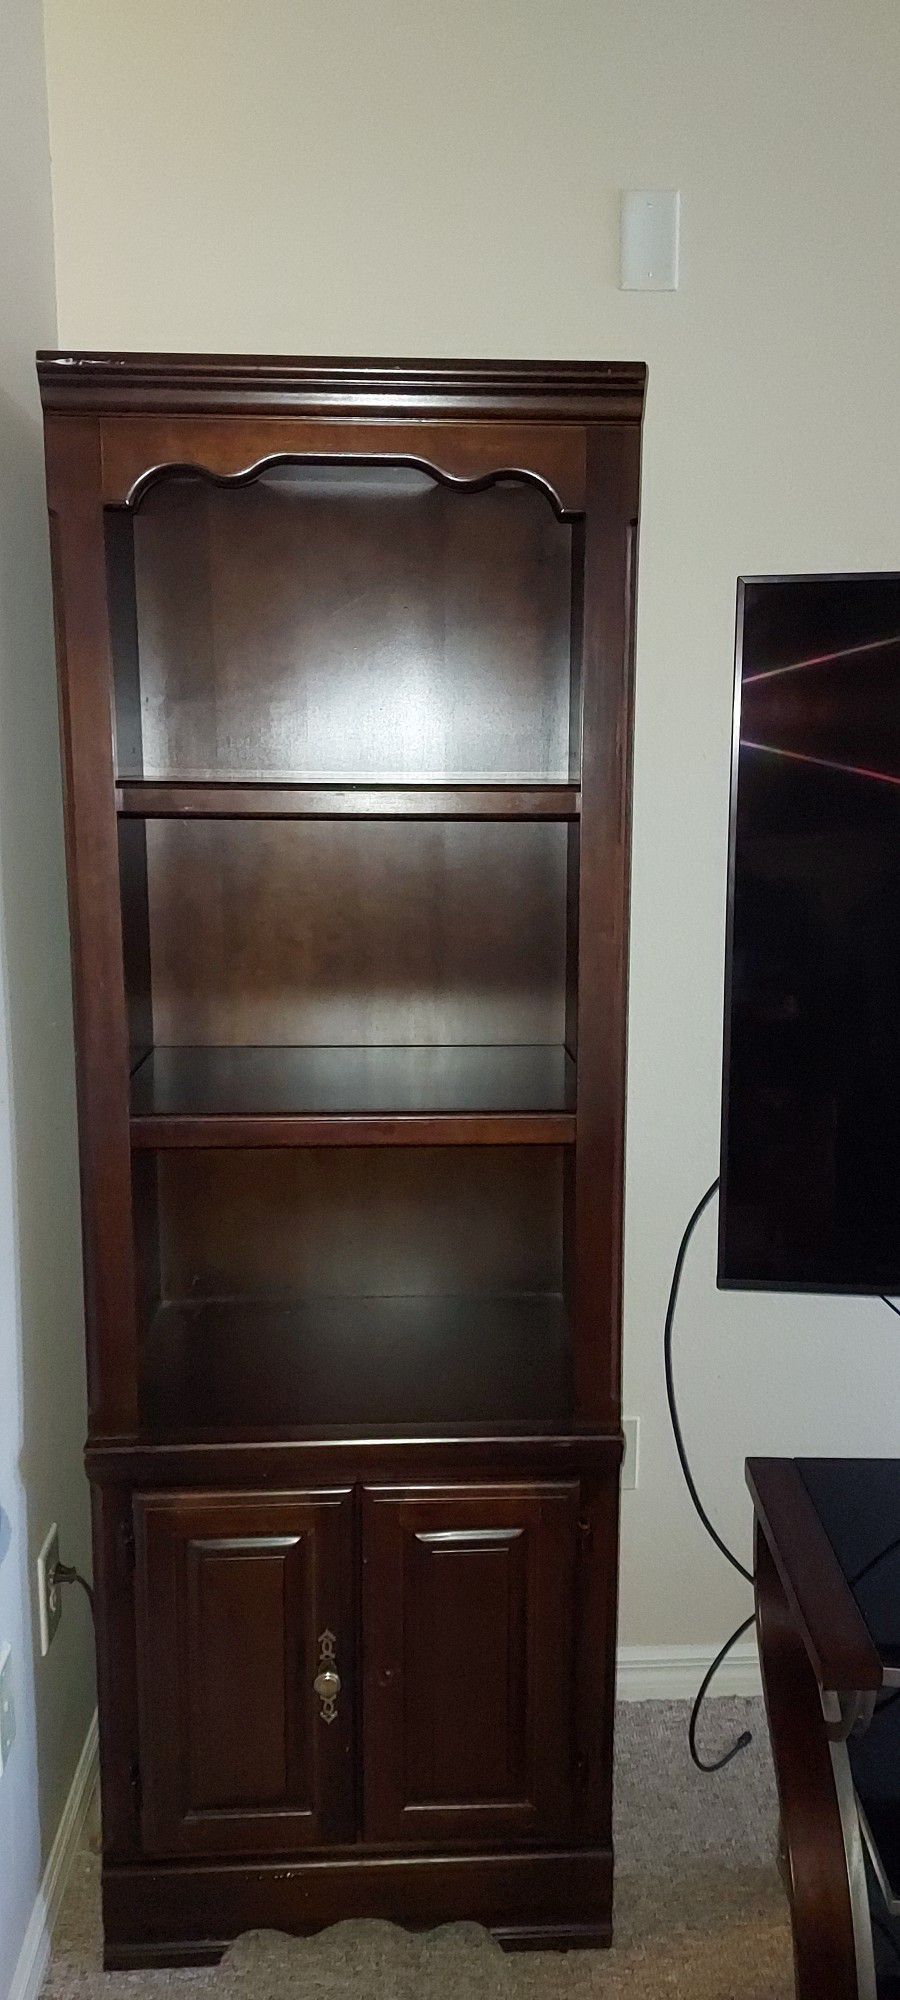 Book Shelfs With Cabinet Storage 